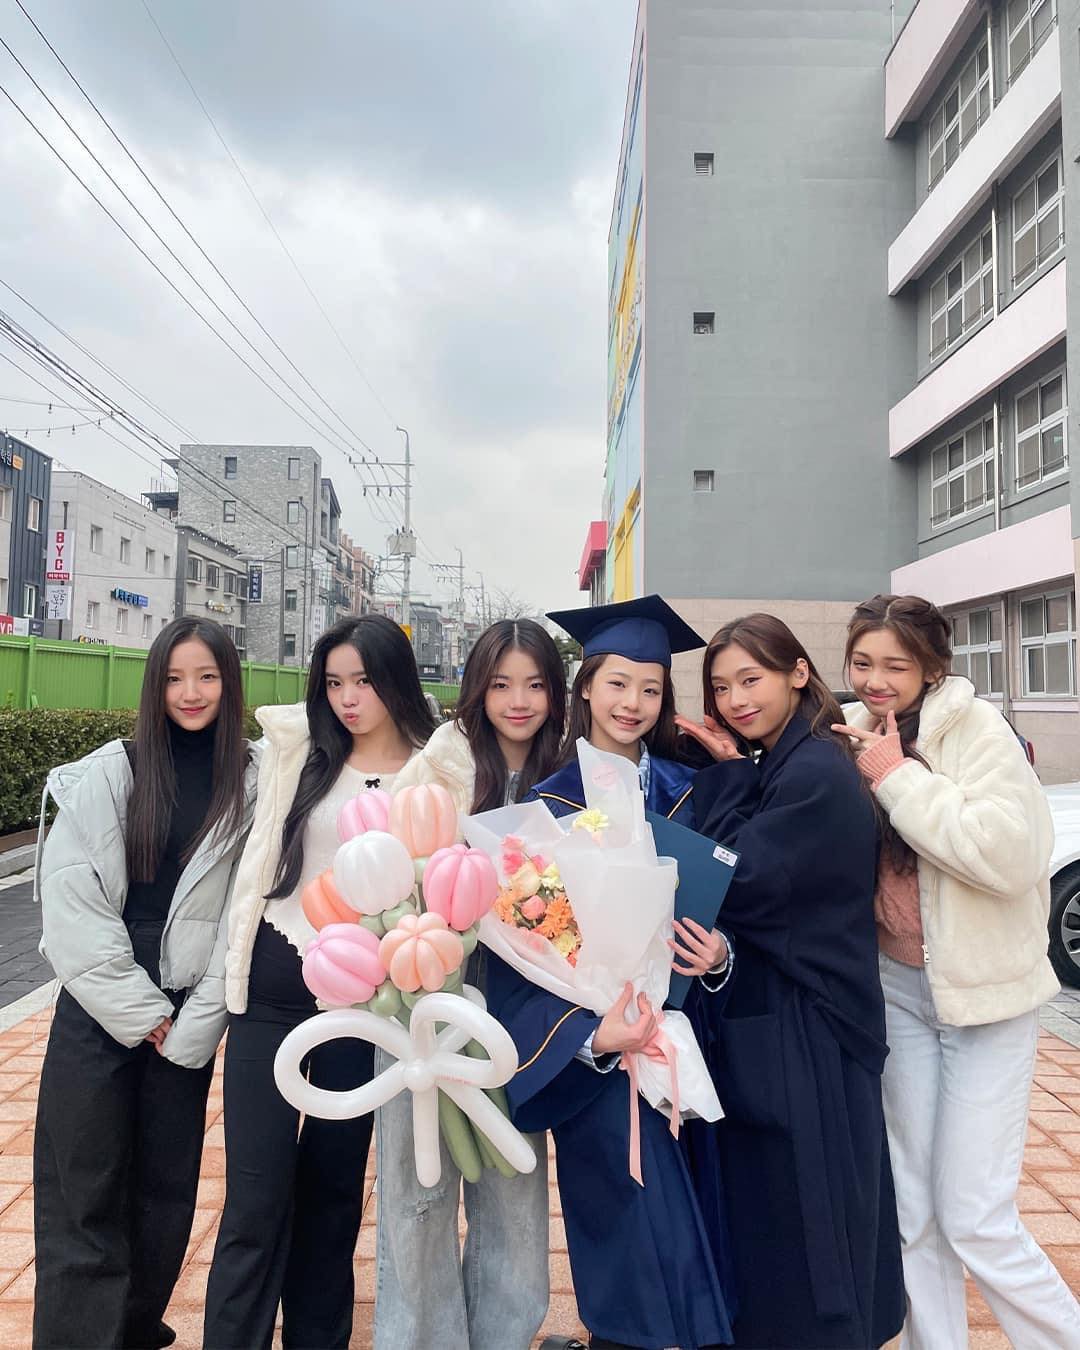 Trong buổi lễ tốt nghiệp của Lim Seo Won, các thành viên trong nhóm đều góp mặt đông đủ để chúc mừng em út. (Ảnh: Internet)